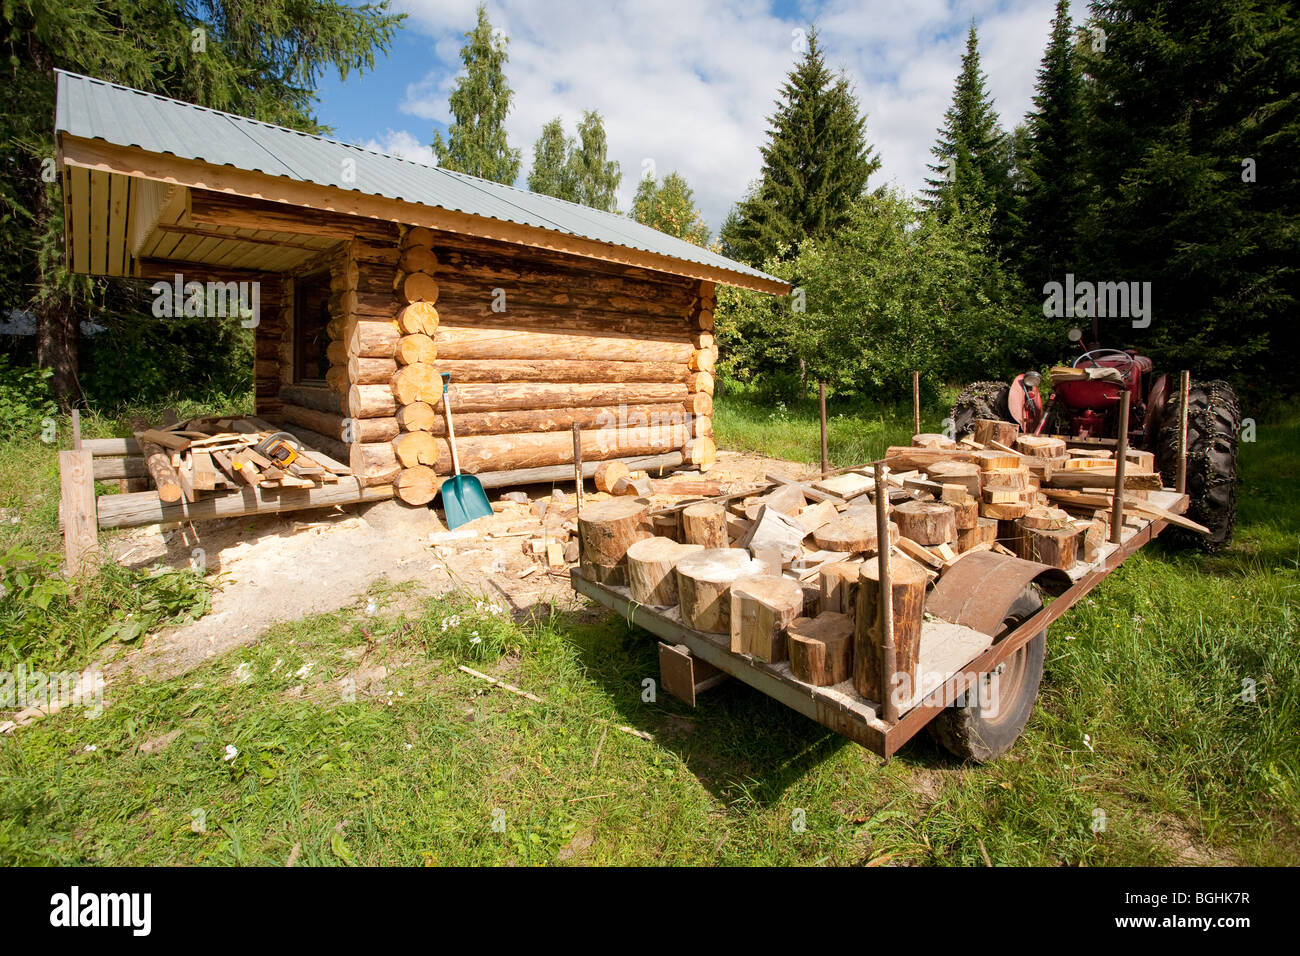 Le tracteur remorque pleine de blocs de bois qui sont les restes de log  cabin , Finlande Photo Stock - Alamy